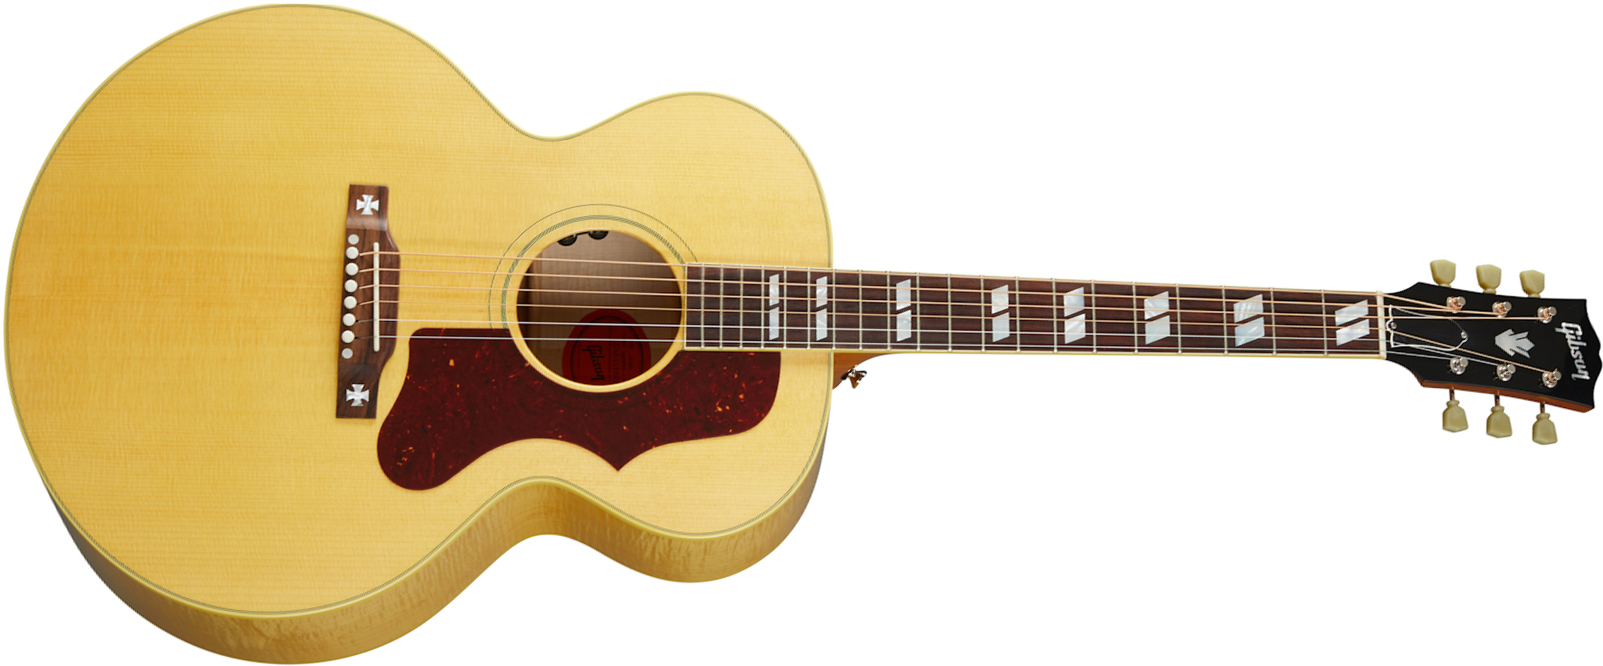 Gibson J-185 Original 2020 Jumbo Epicea Erable Rw - Antique Natural - Elektroakustische Gitarre - Main picture